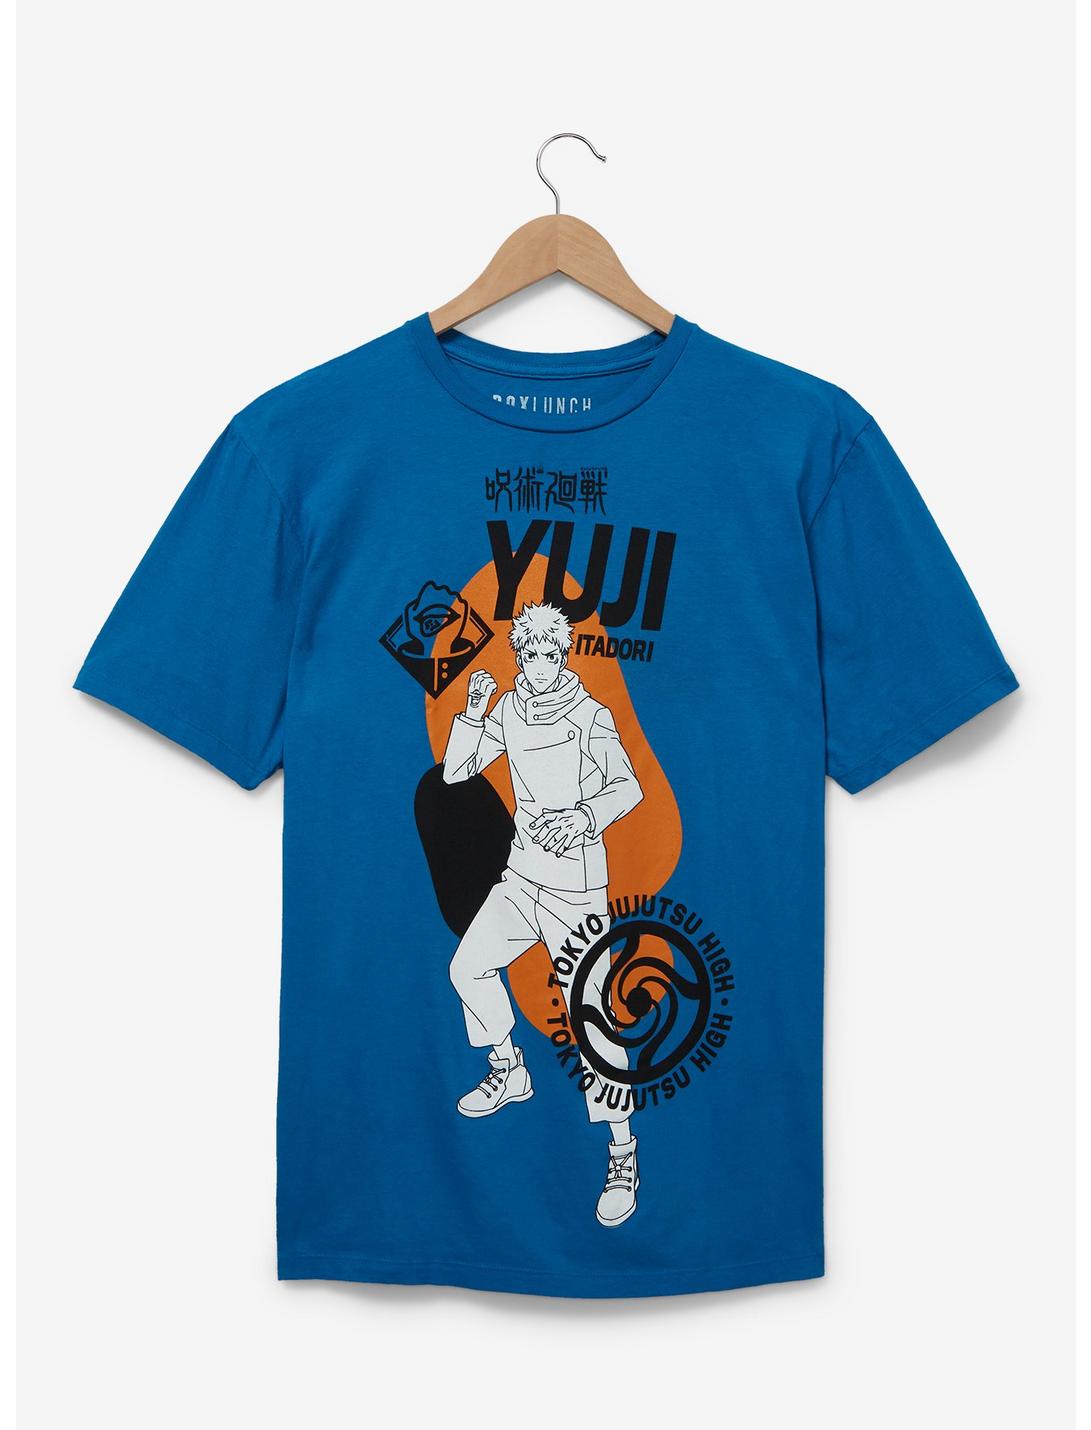 Jujutsu Kaisen Yuji Itadori Tonal Icons T-Shirt —BoxLunch Exclusive, ROYAL, hi-res